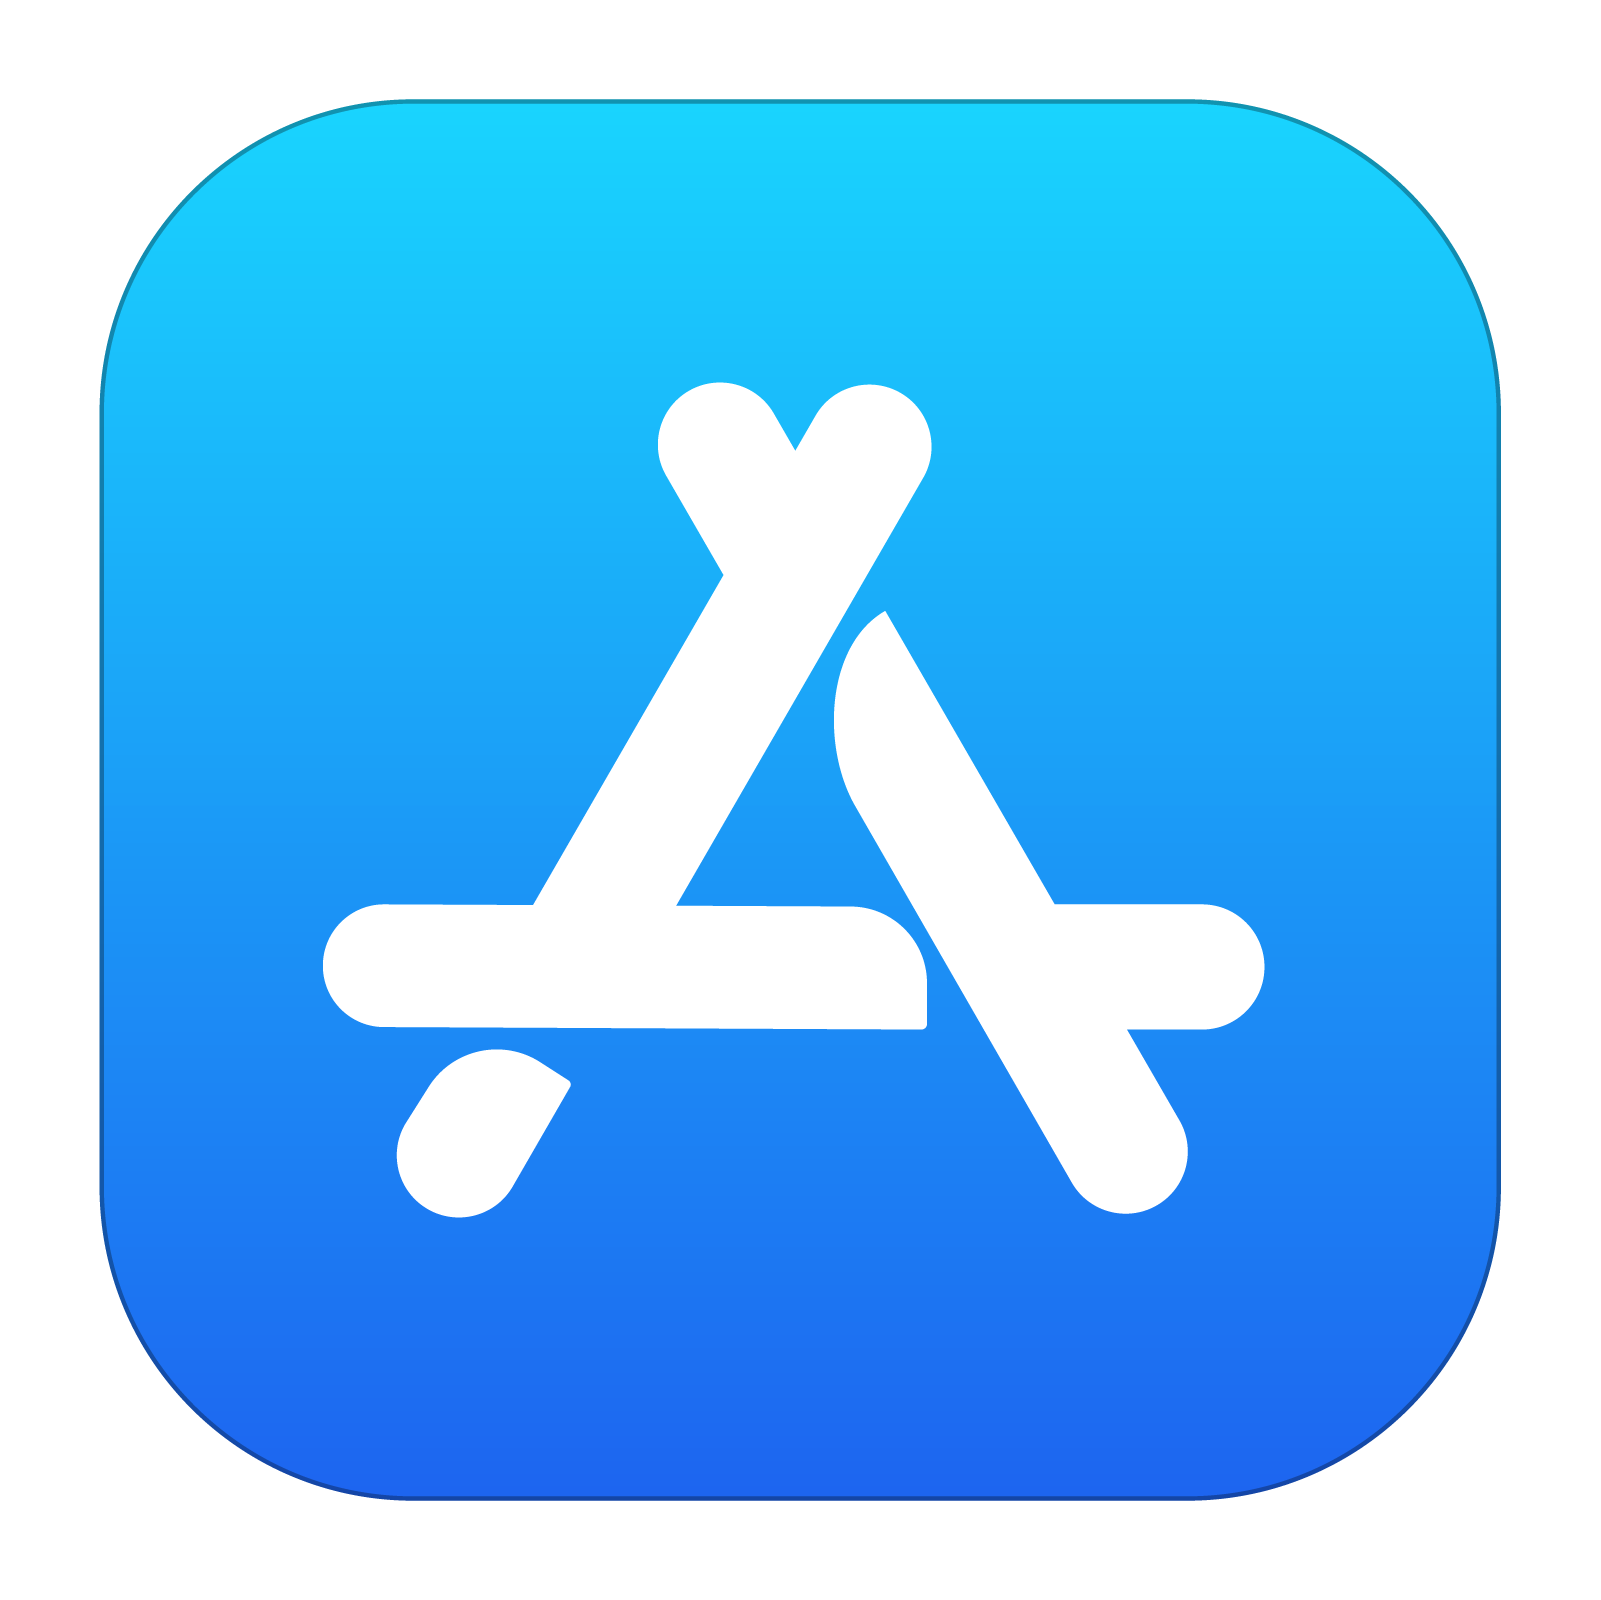 icono app store